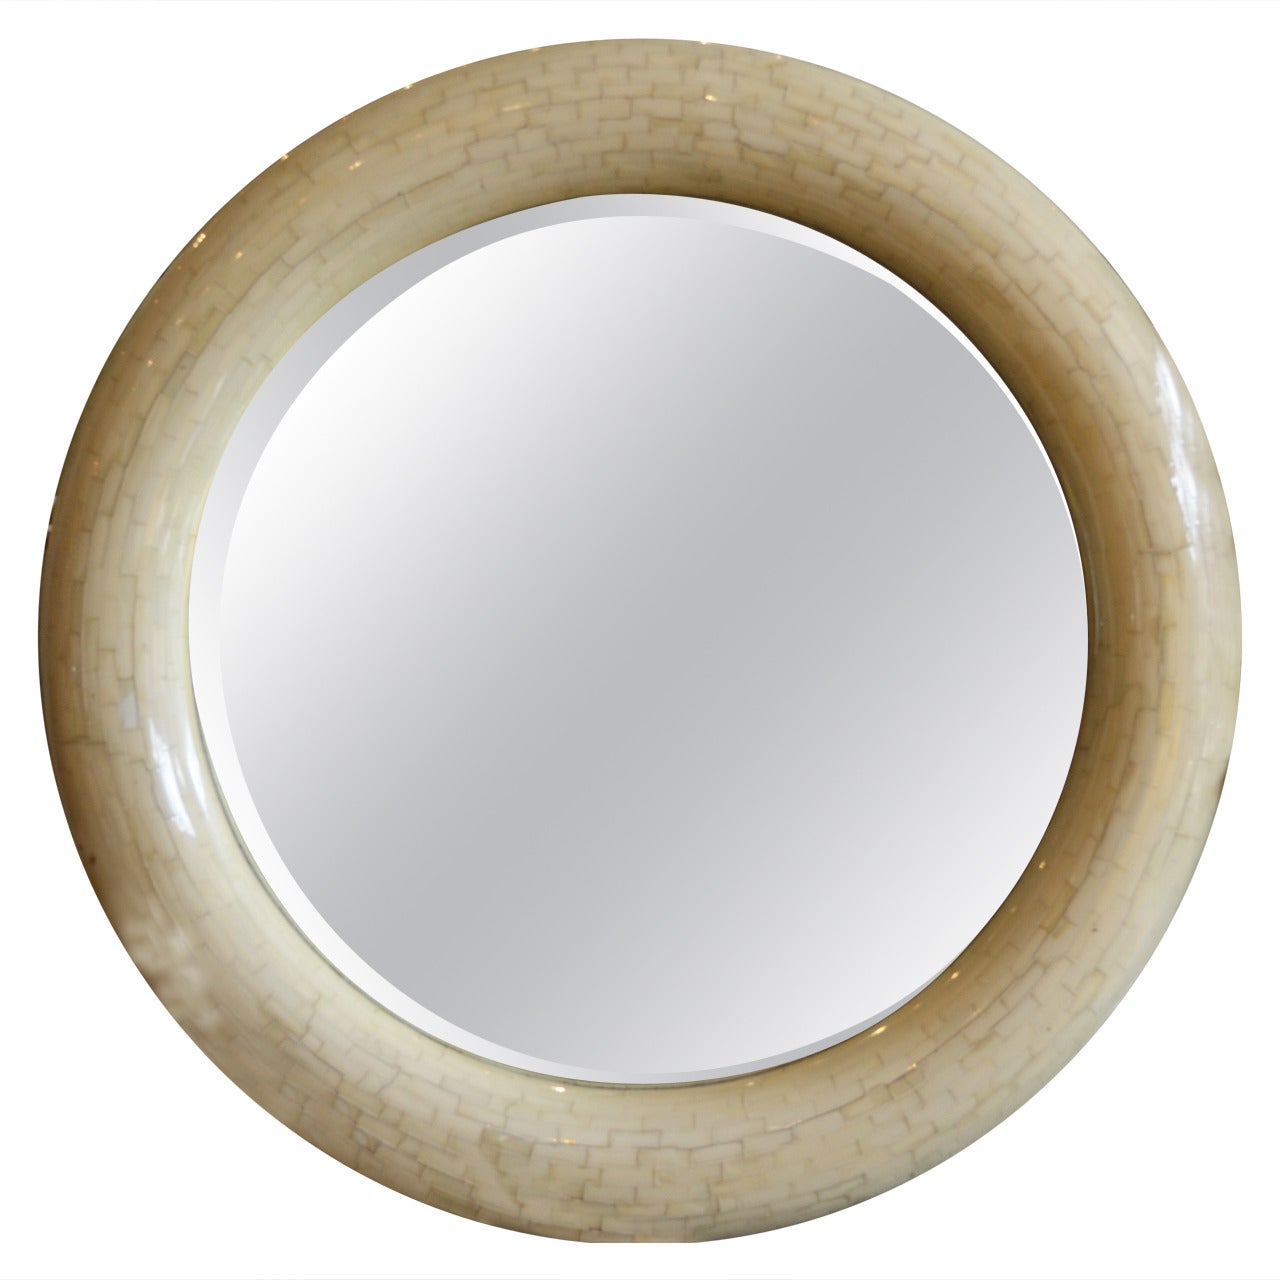 Karl Springer Style Round Mirror